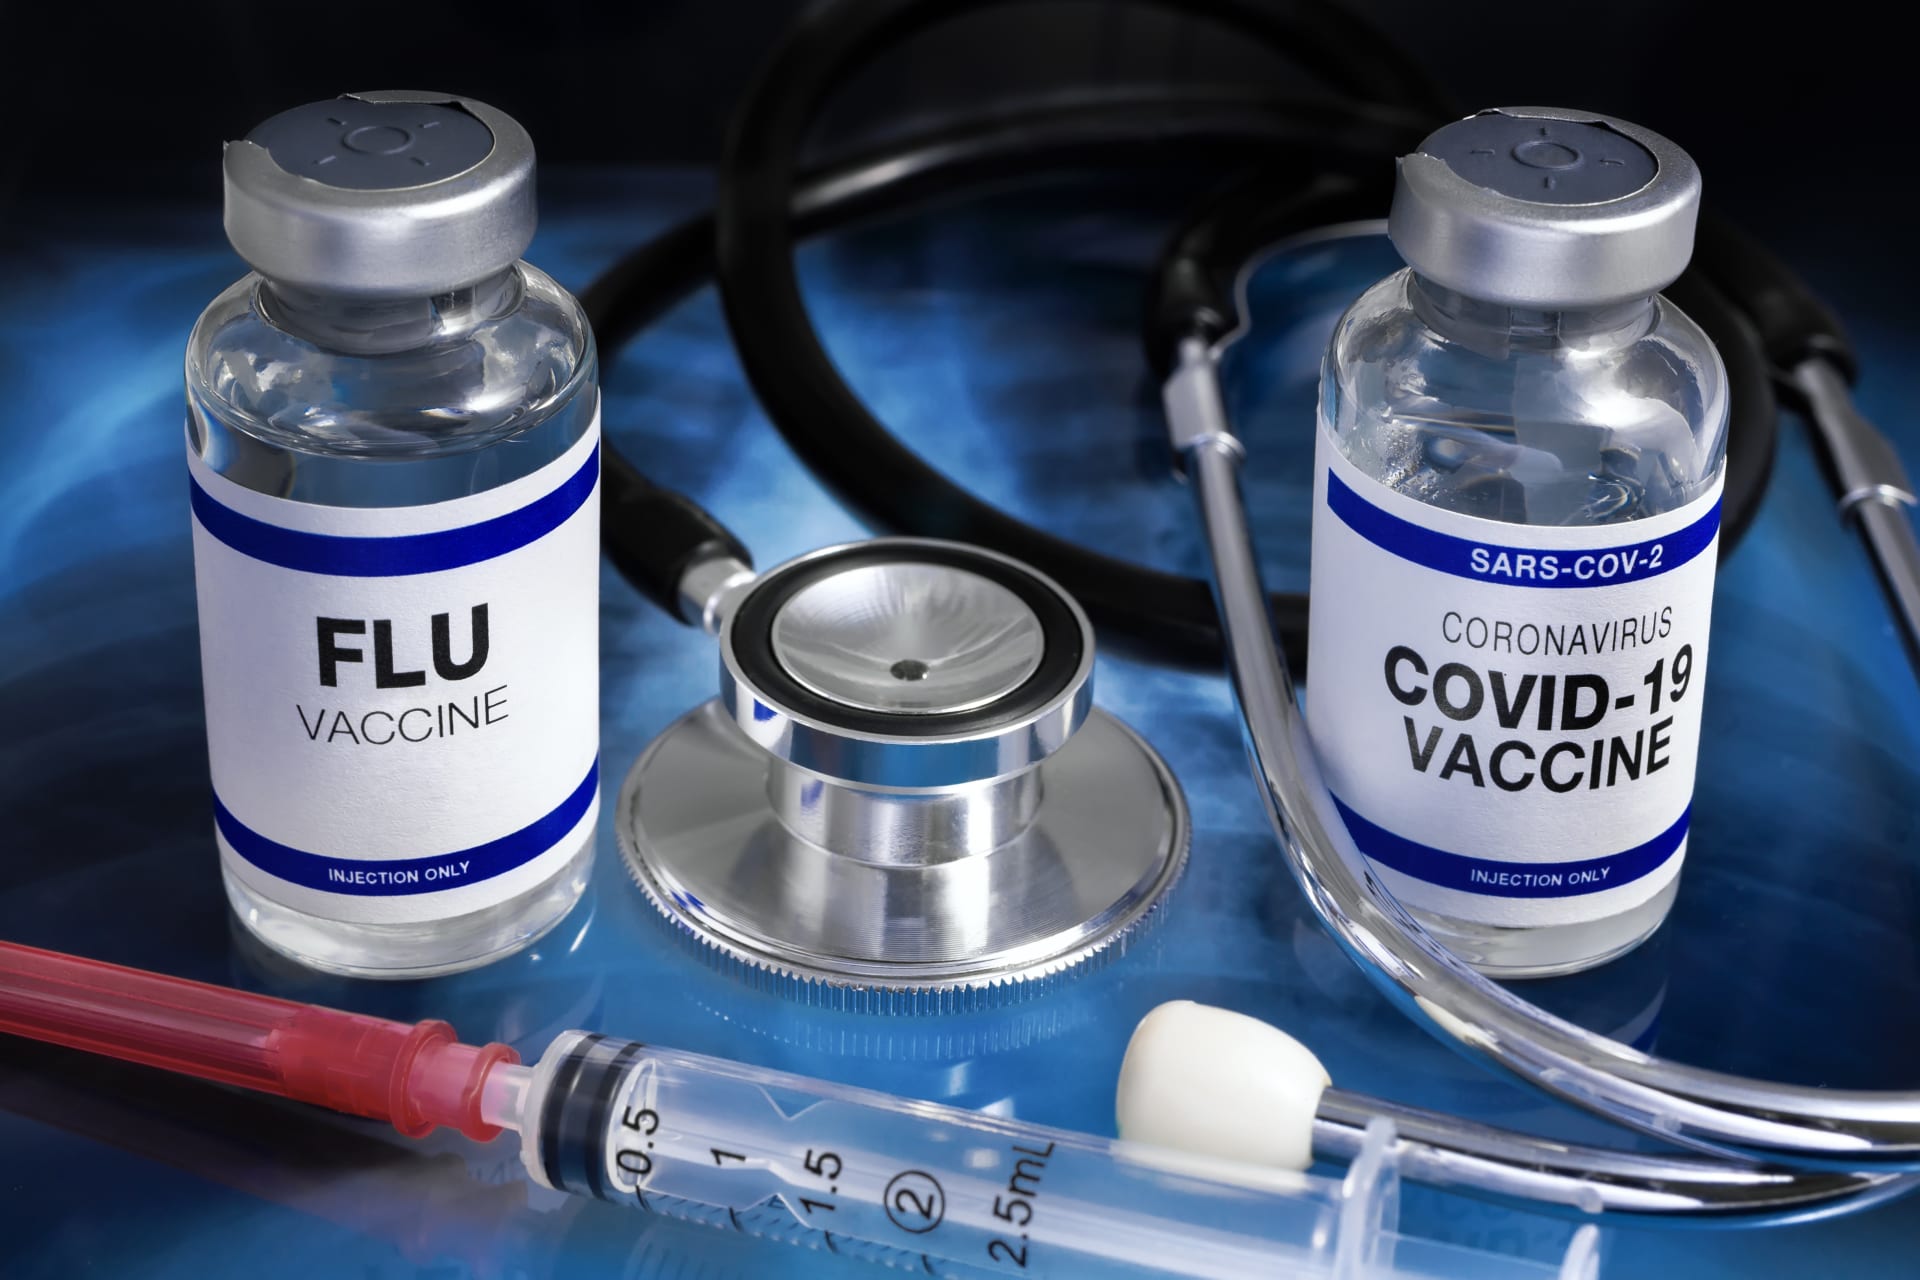 Očkování proti chřipce a nemoci COVID-19 se nevylučuje. Lidé mohou v rychlém sledu podstoupit oboje.